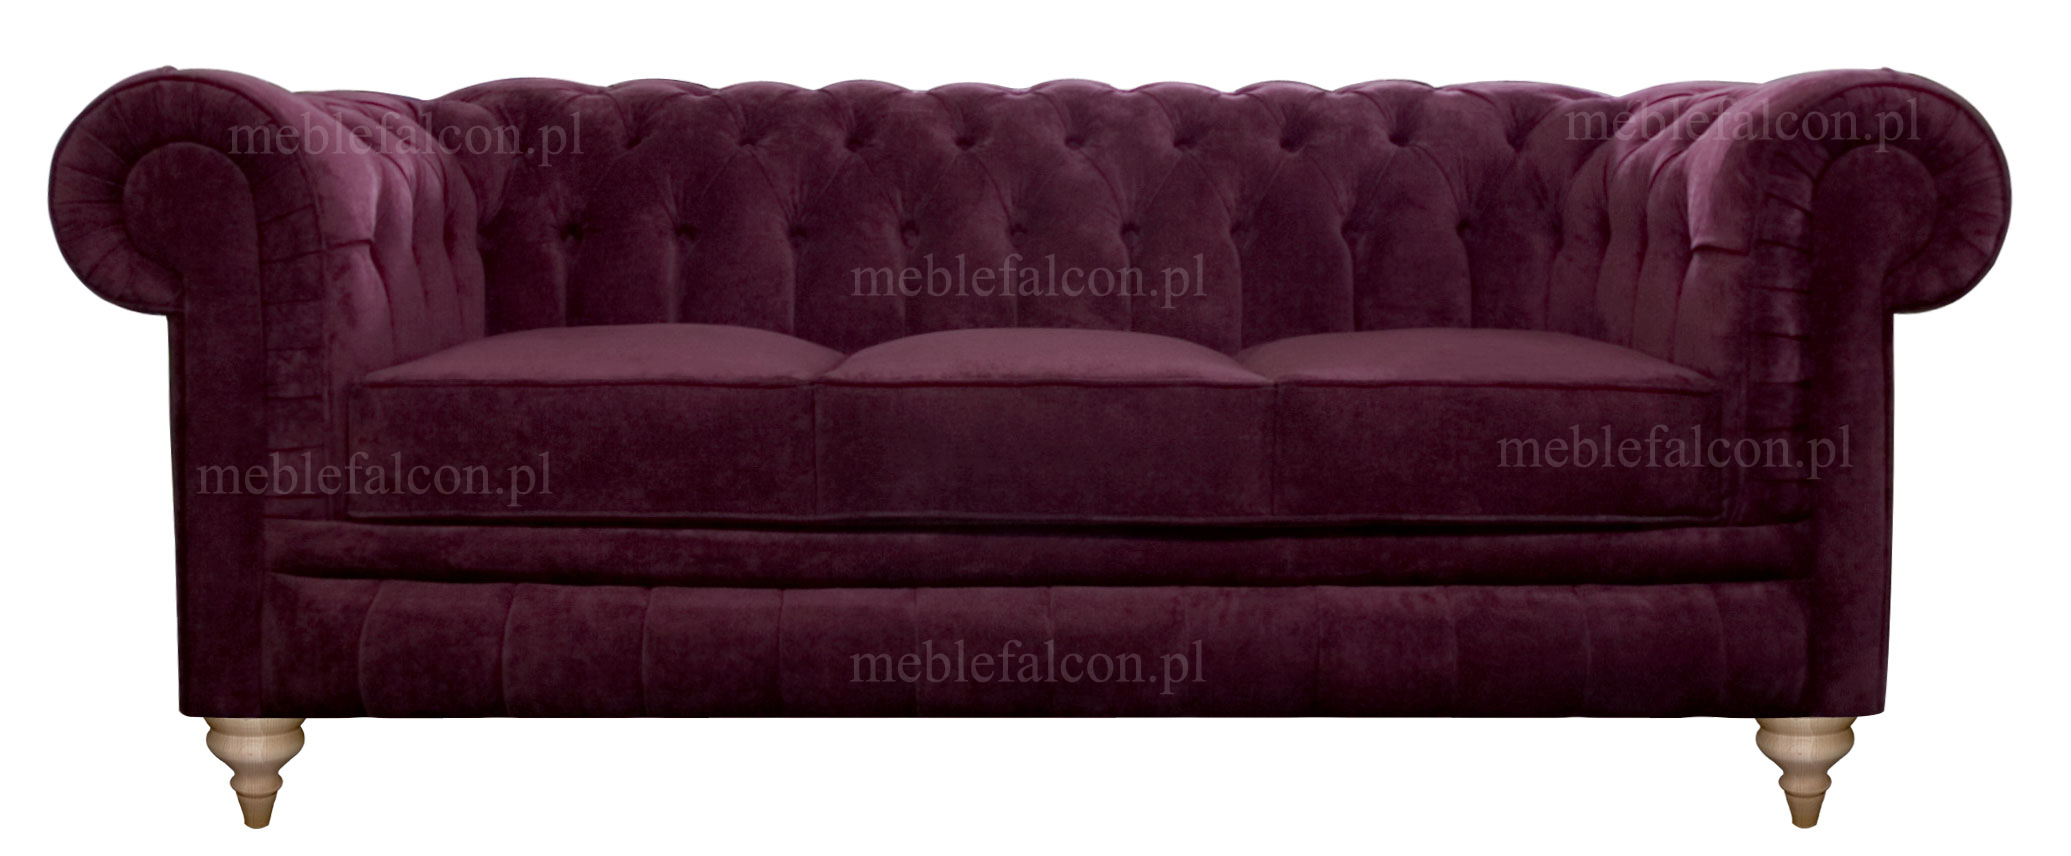 purpurowa sofa pluszowa smukła delikatna linia idealna dla sofy salonowej 